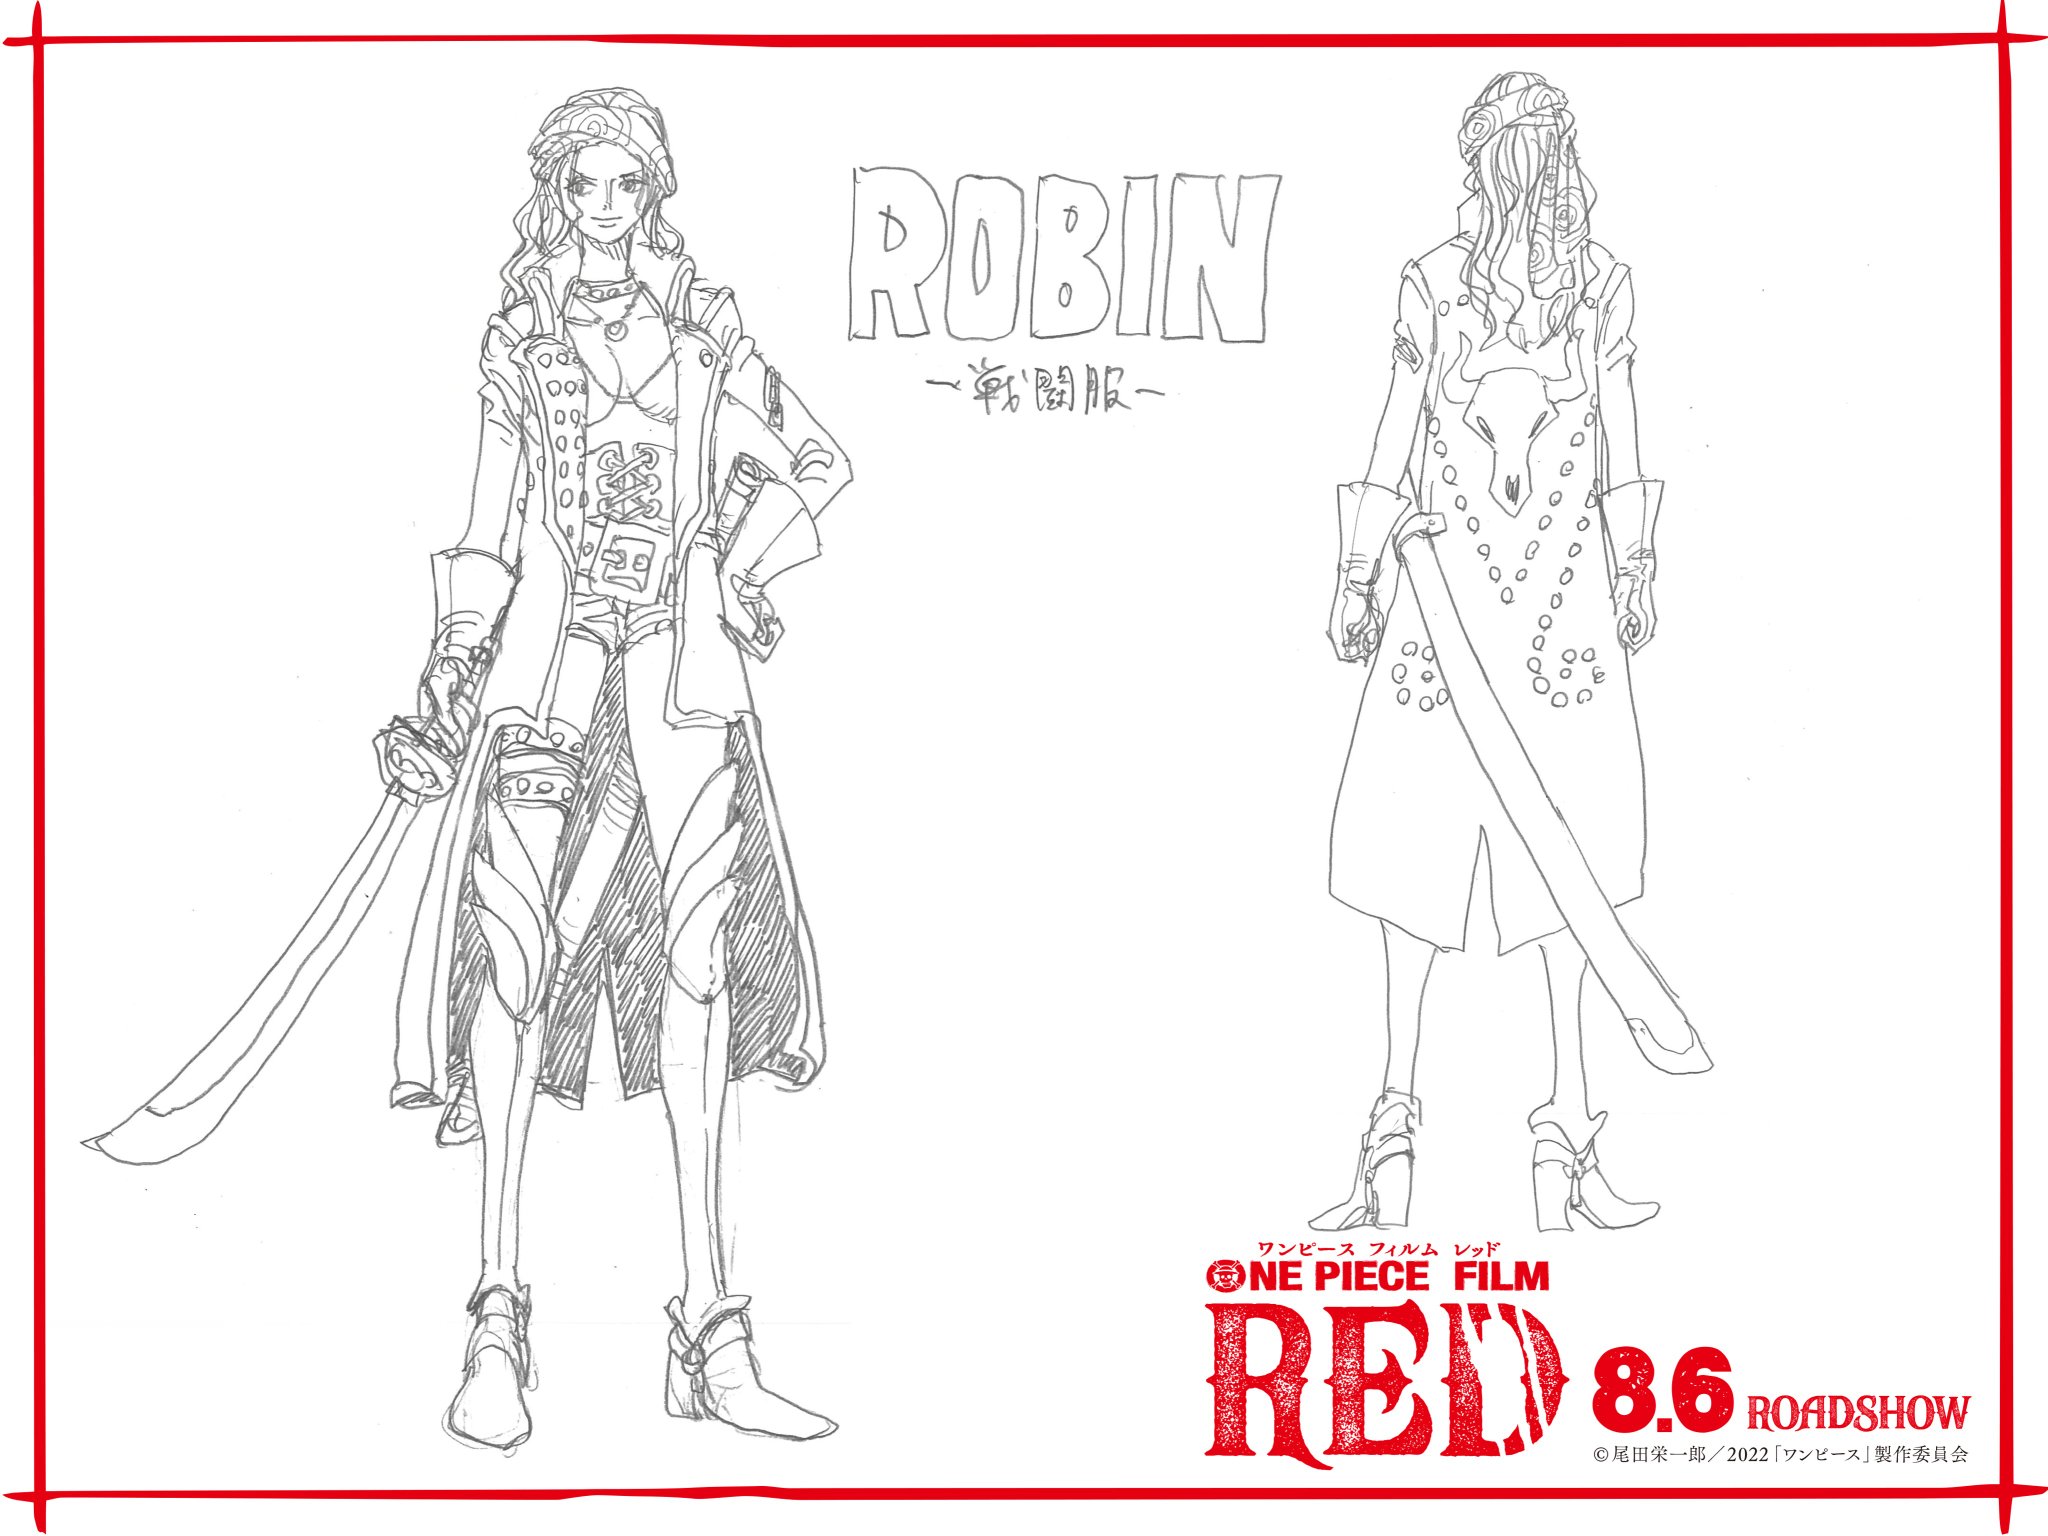 One piece filme red: "uniforme de combate" de robin.